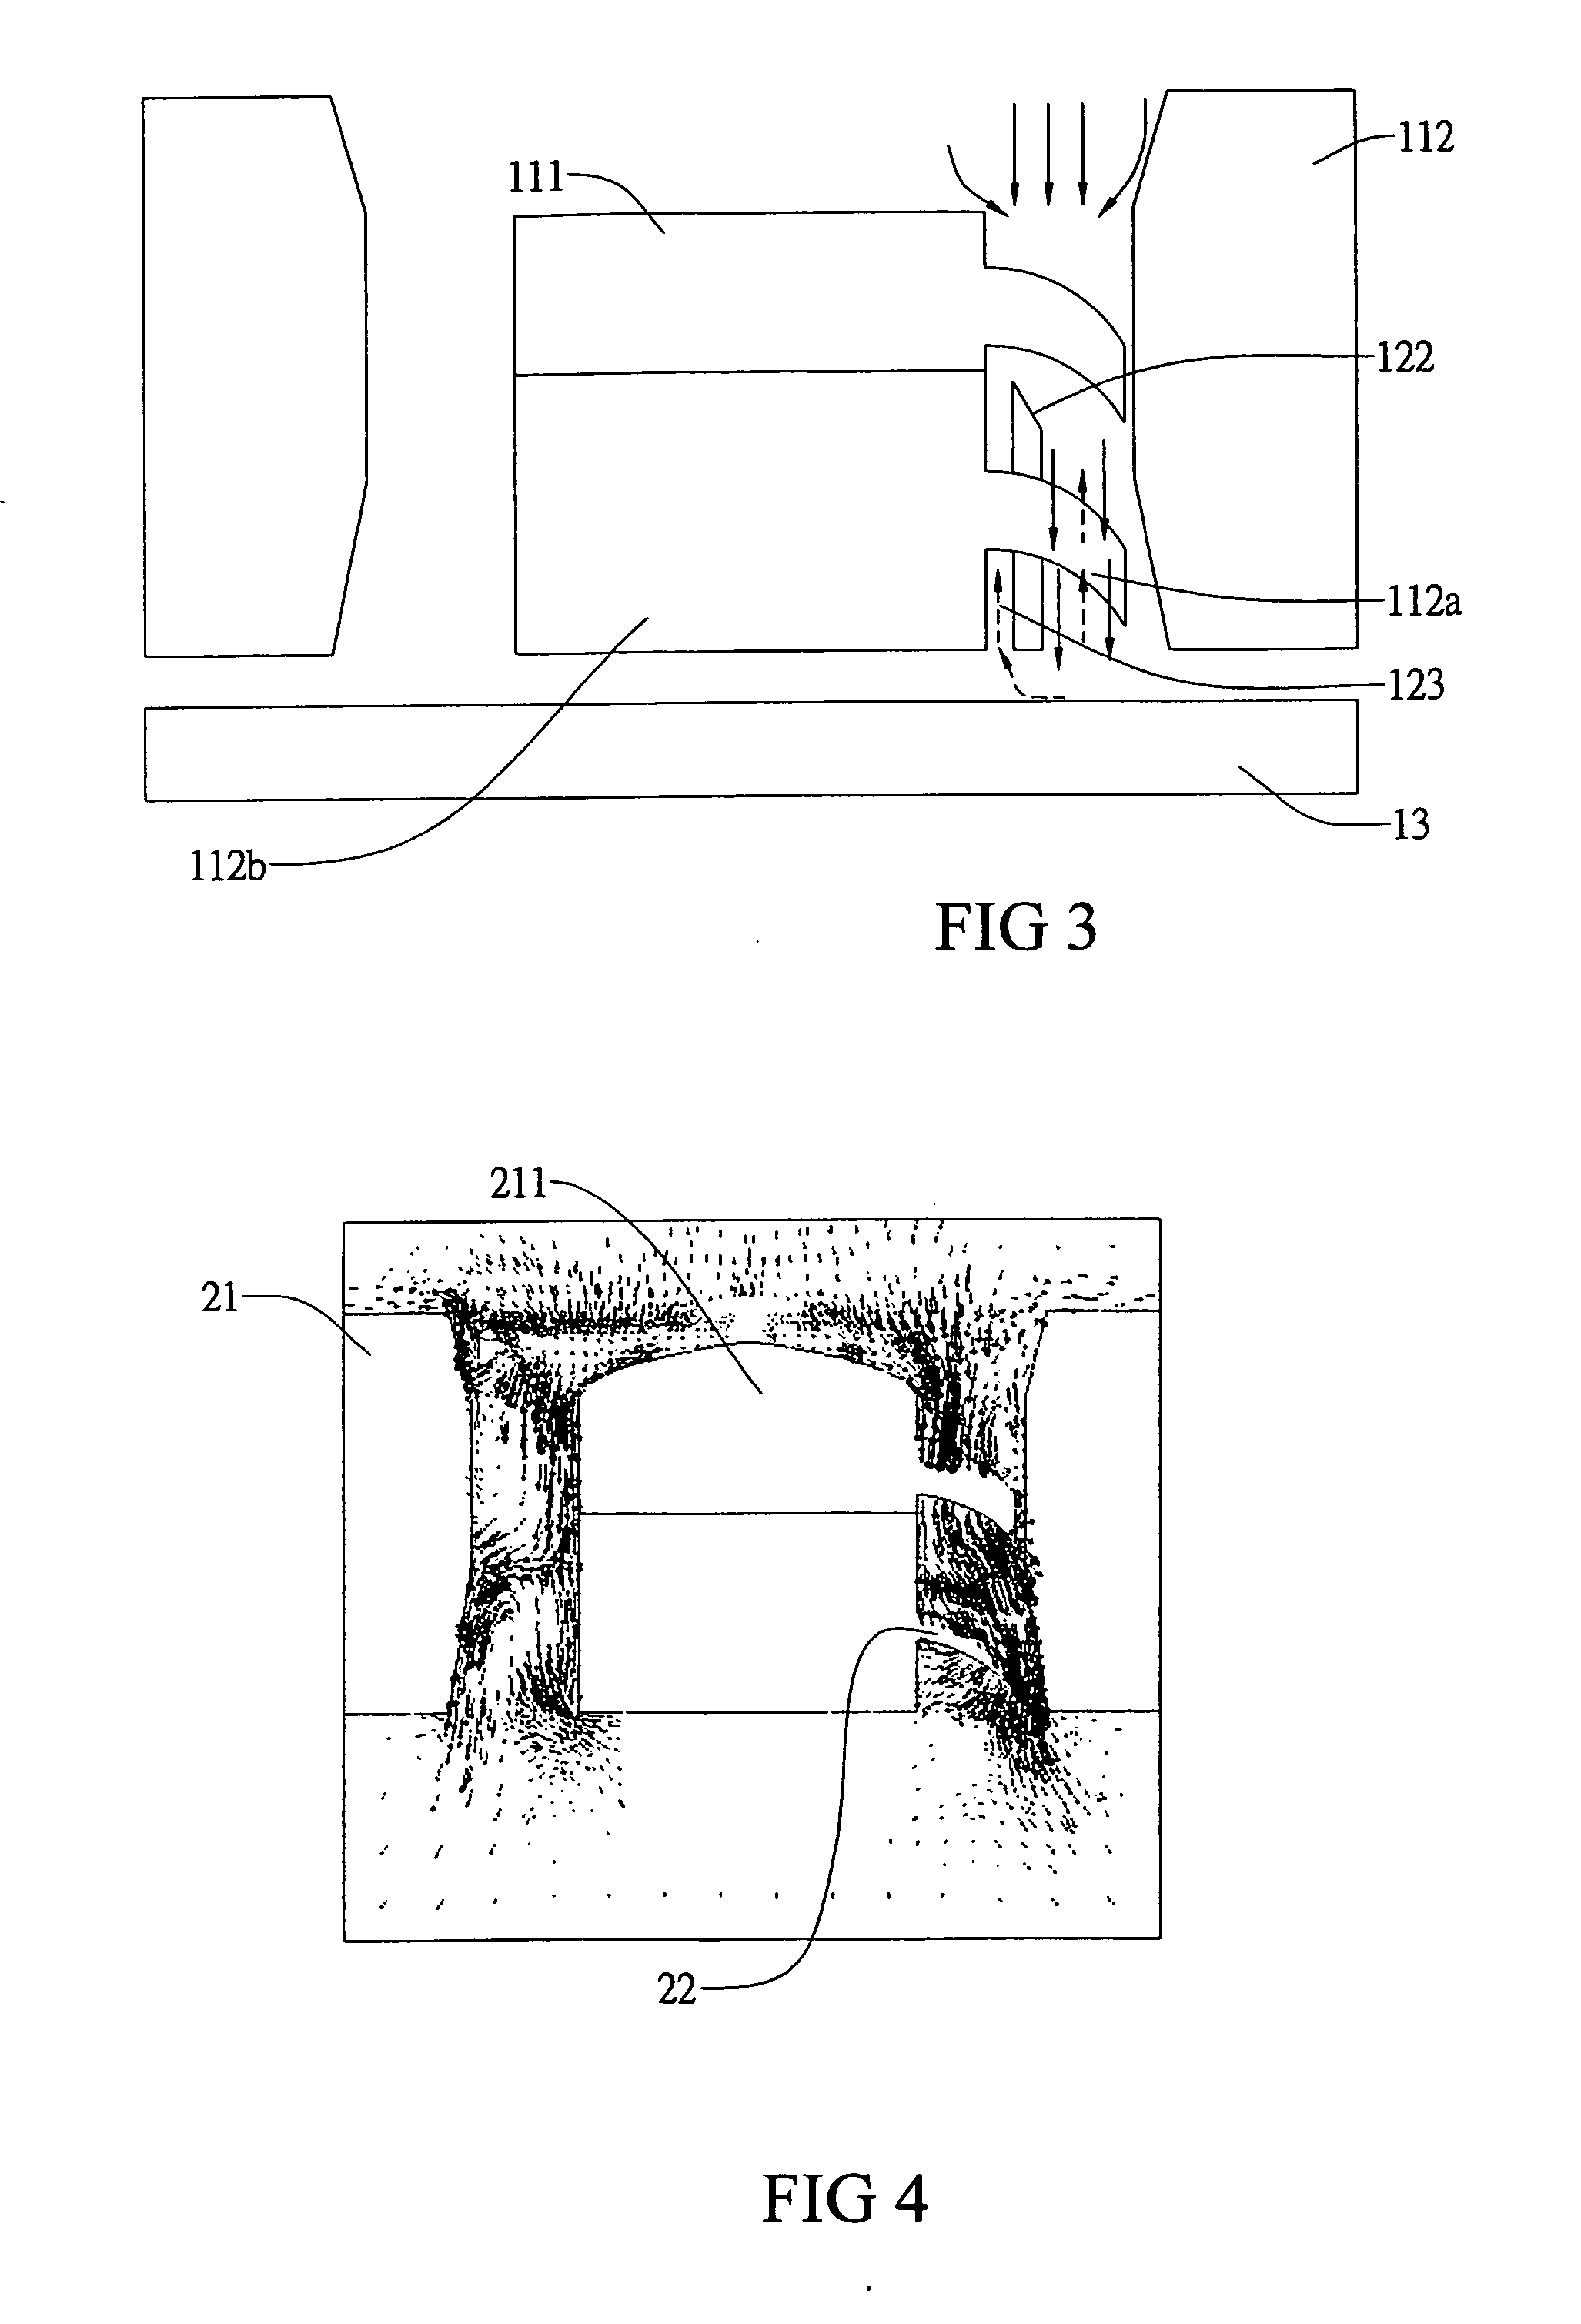 Ring unit for decreasing eddy flow area of a fan module